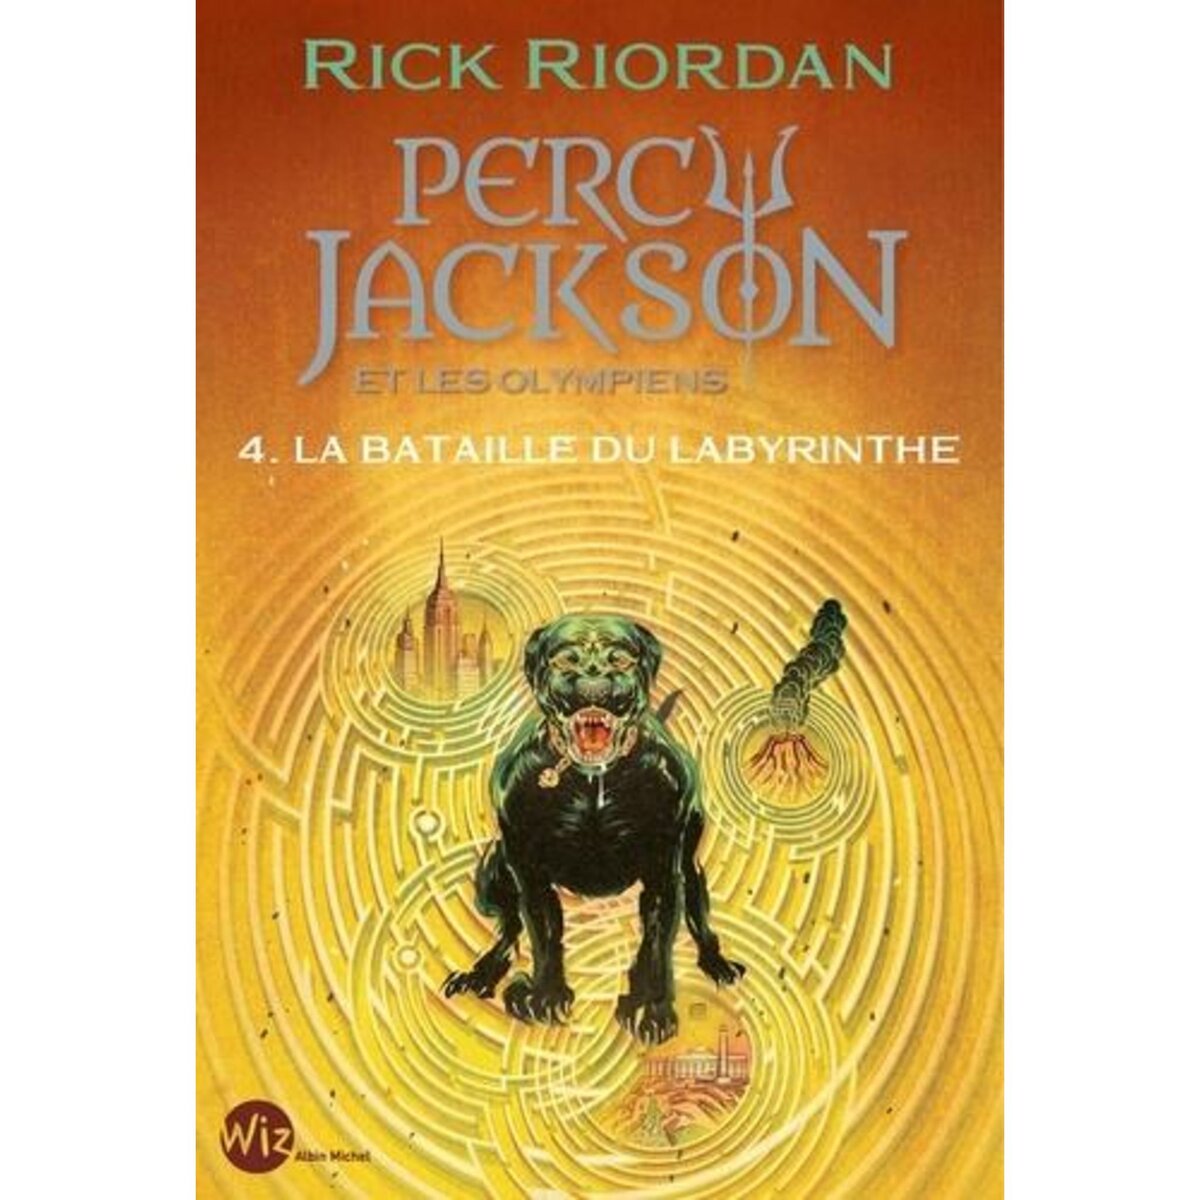  PERCY JACKSON ET LES OLYMPIENS TOME 4 : LA BATAILLE DU LABYRINTHE, Riordan Rick